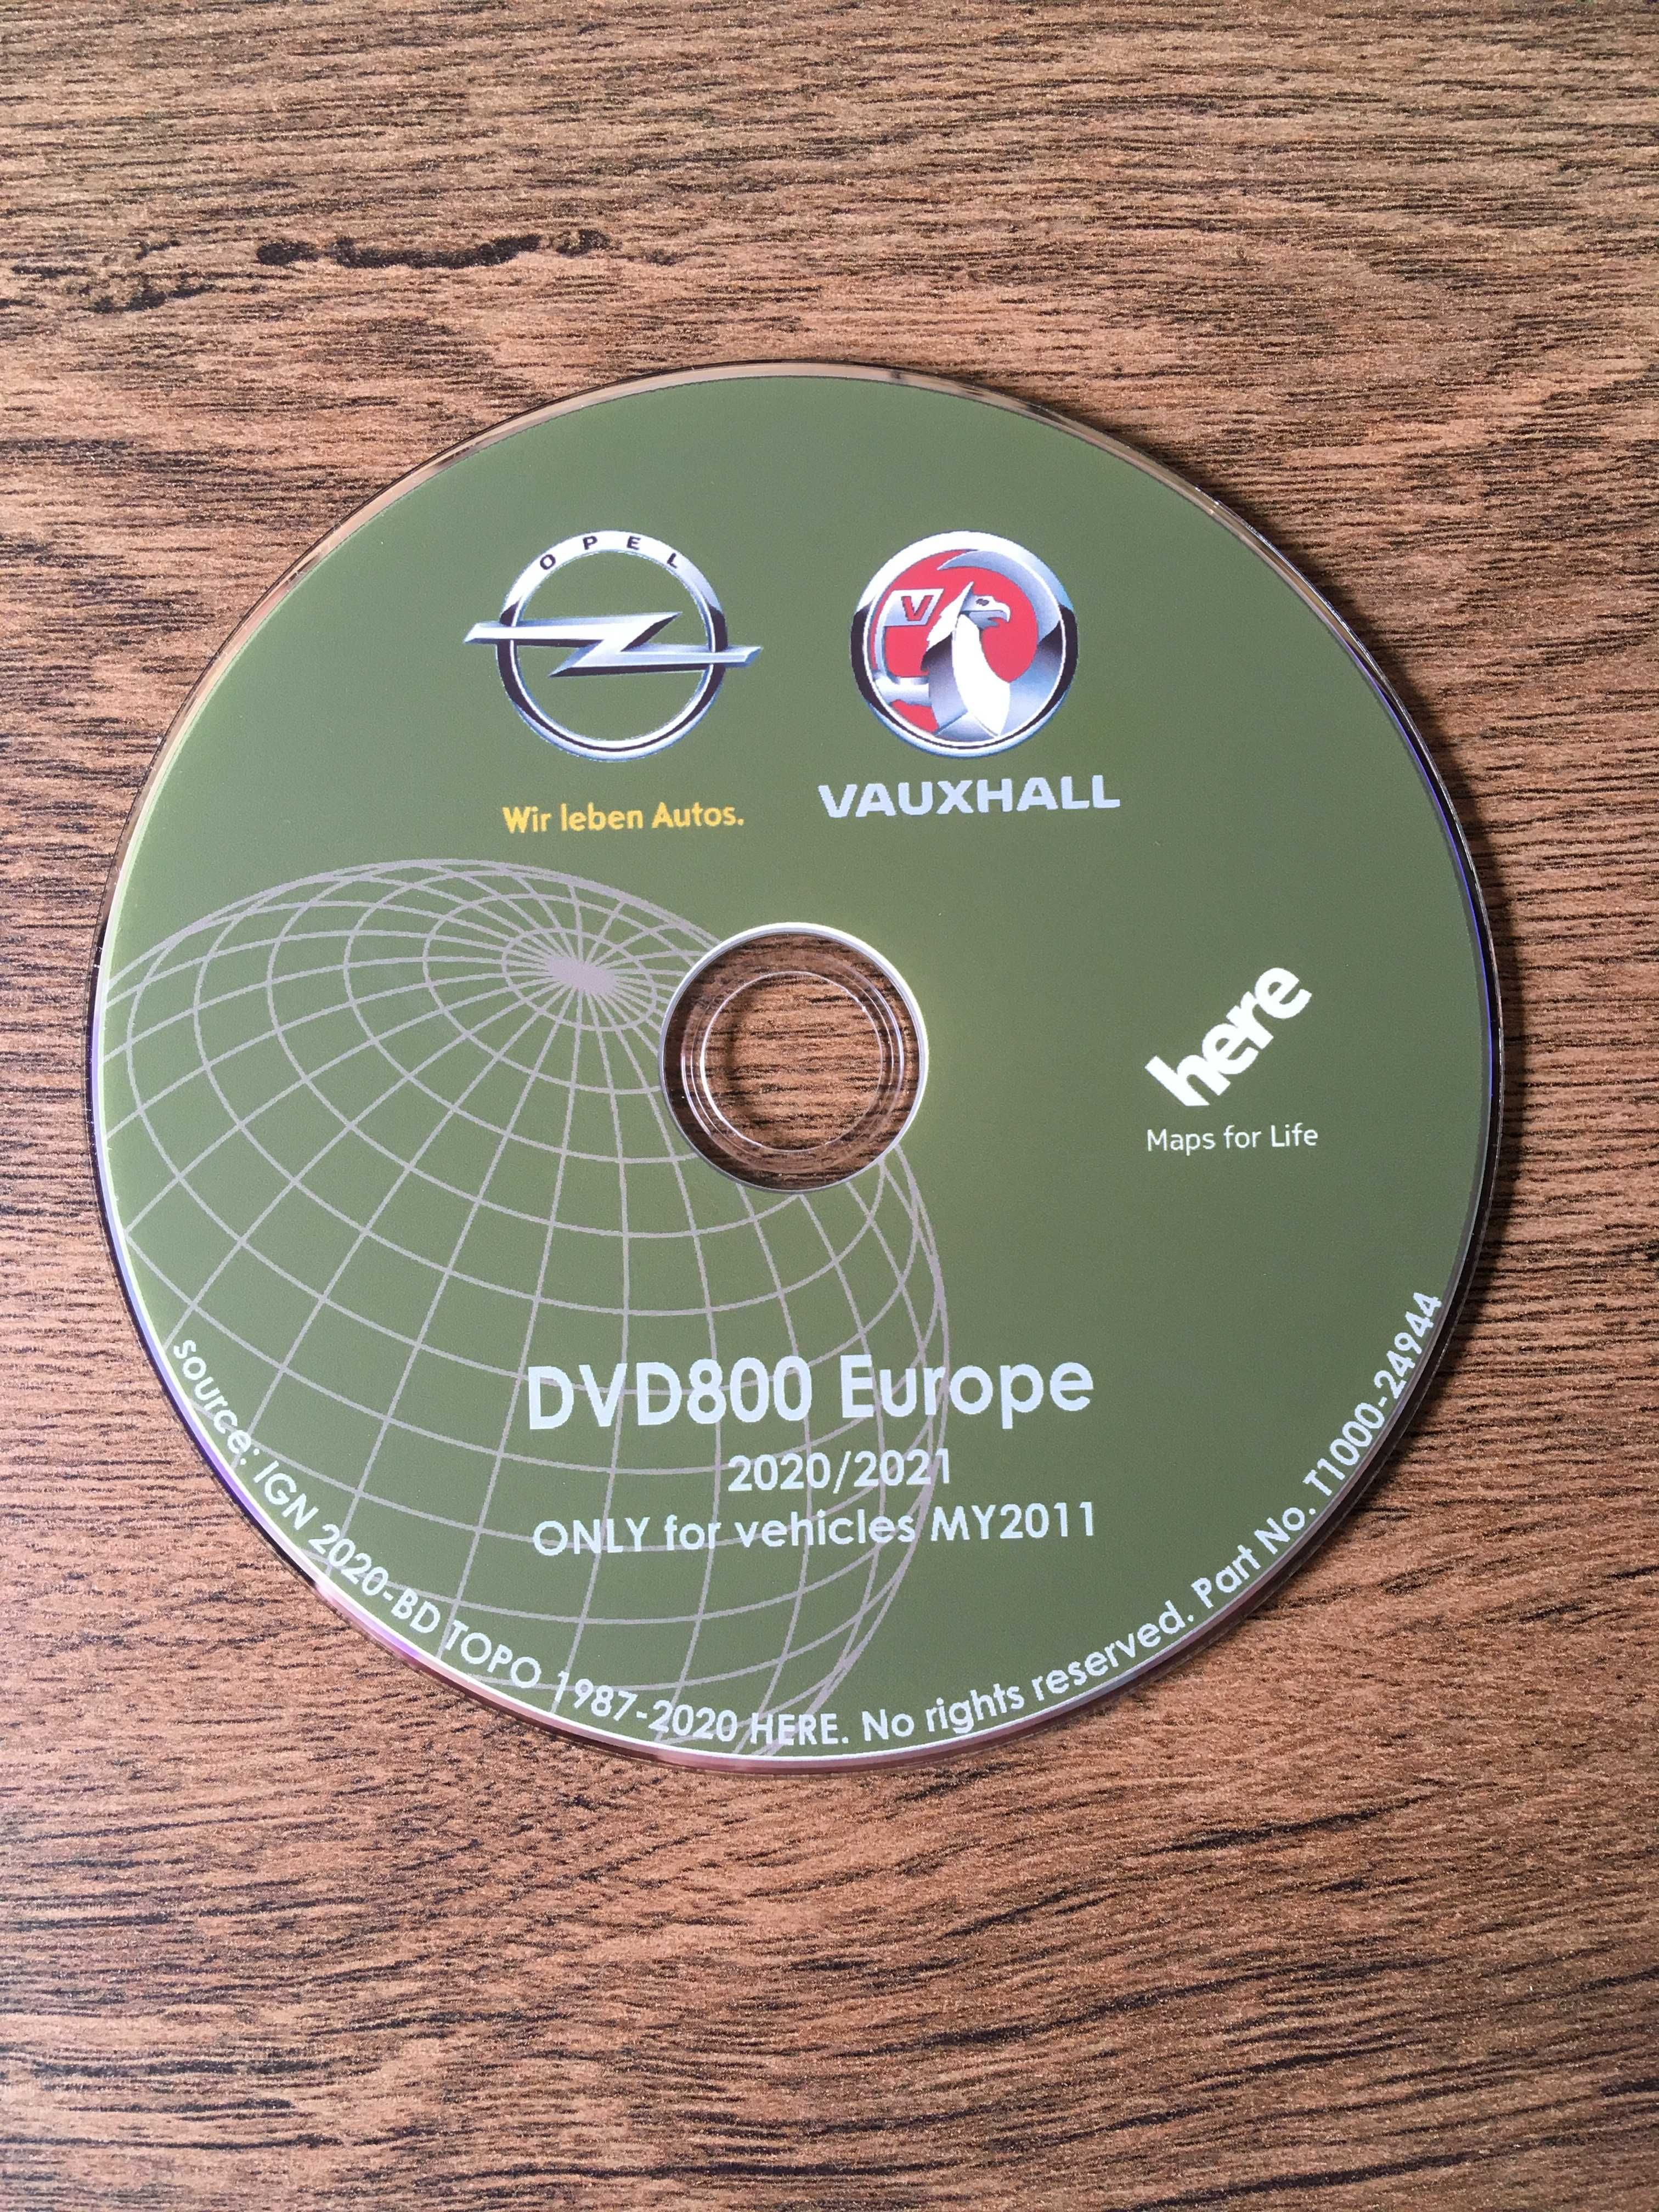 НОВО Opel 2022гд NAVI 900/600 Sd карта Vauxhall Chevrolet DVD800 CD500